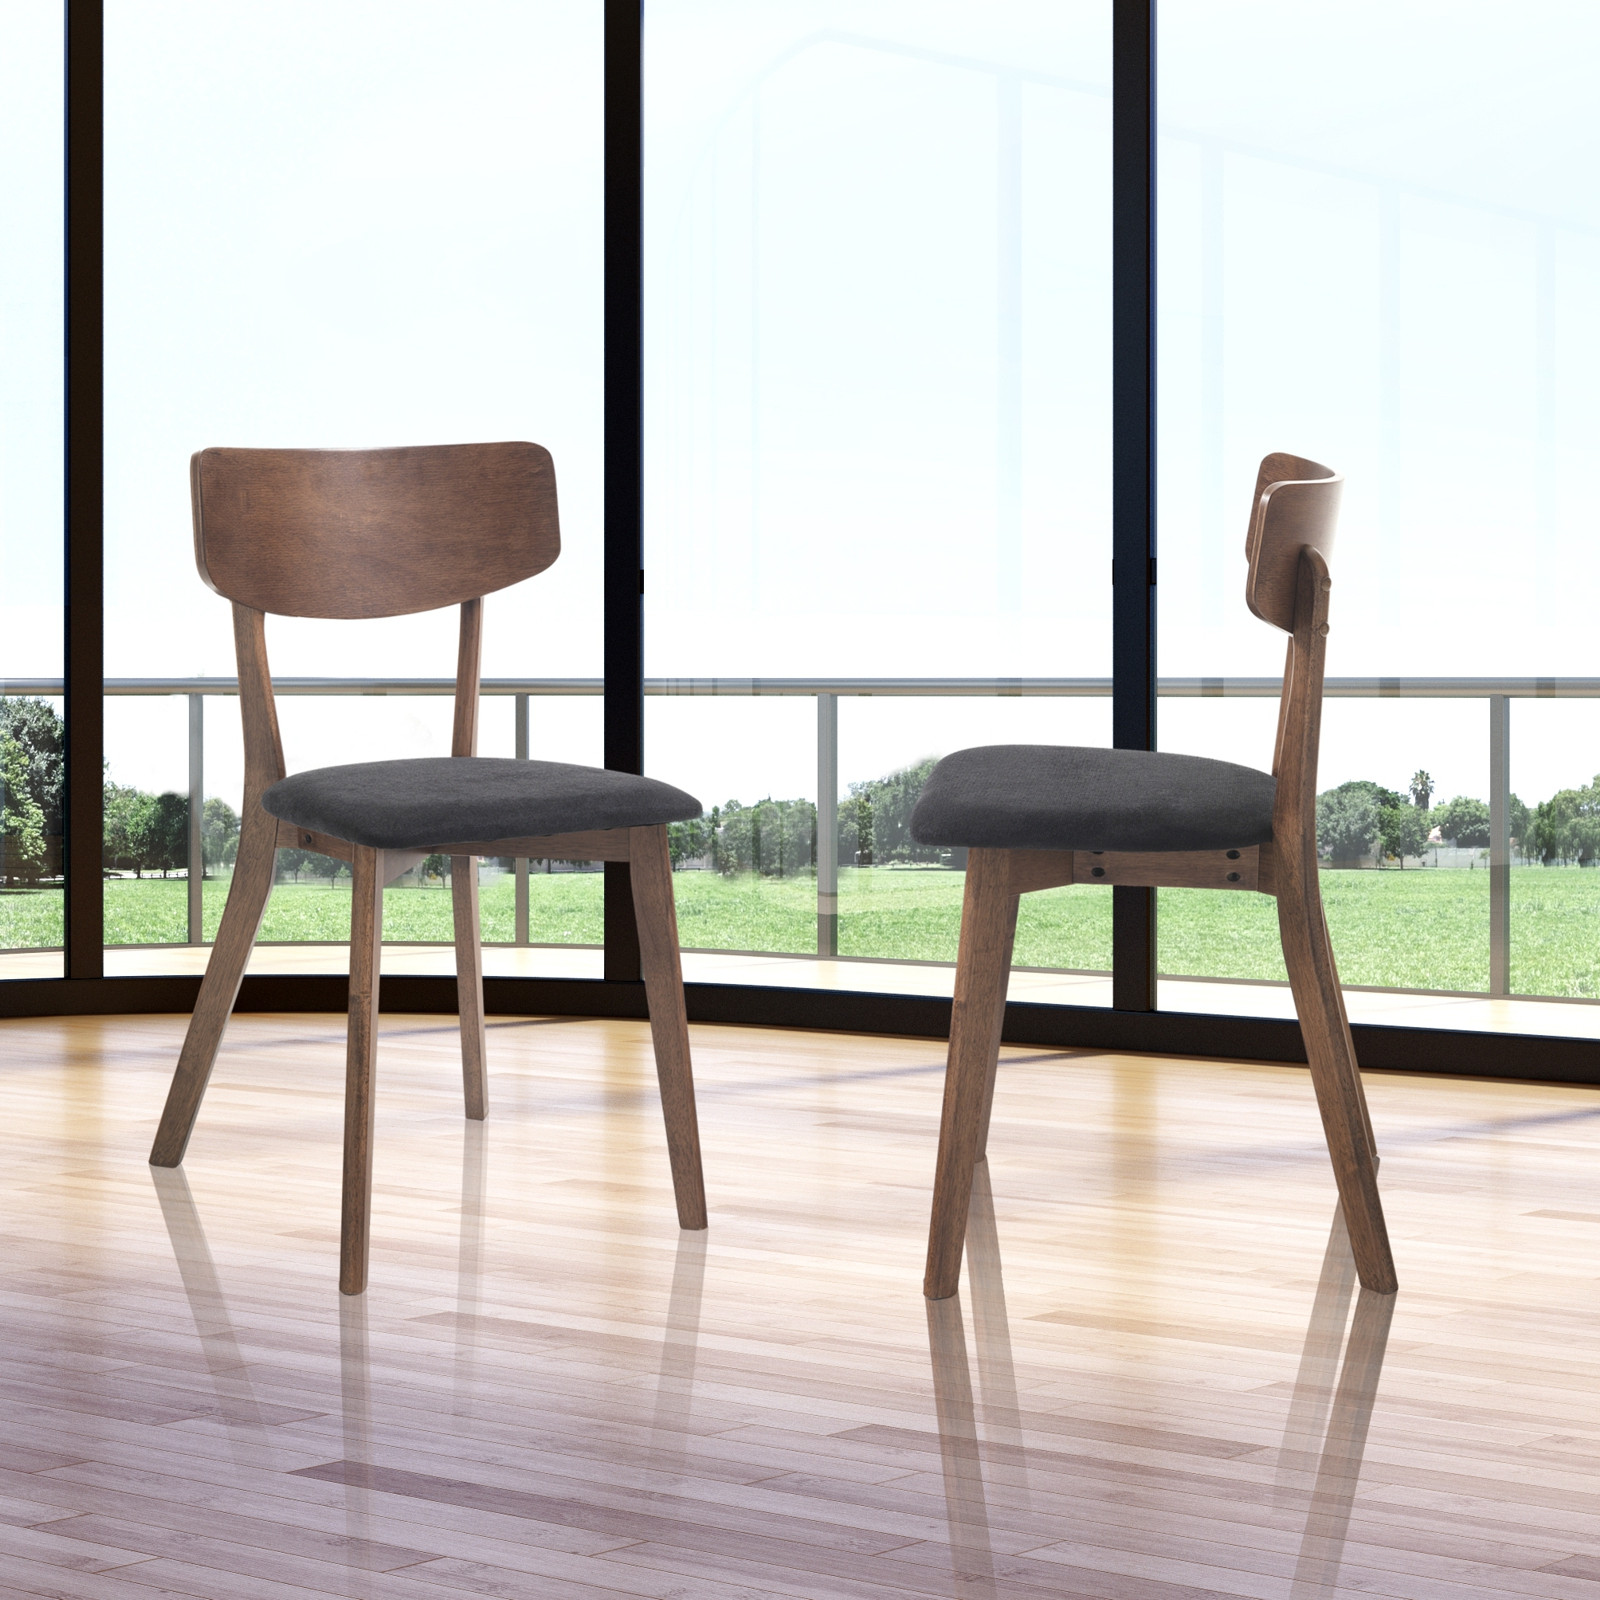 Sedia in legno Ystad - Una sedia dal design essenziale